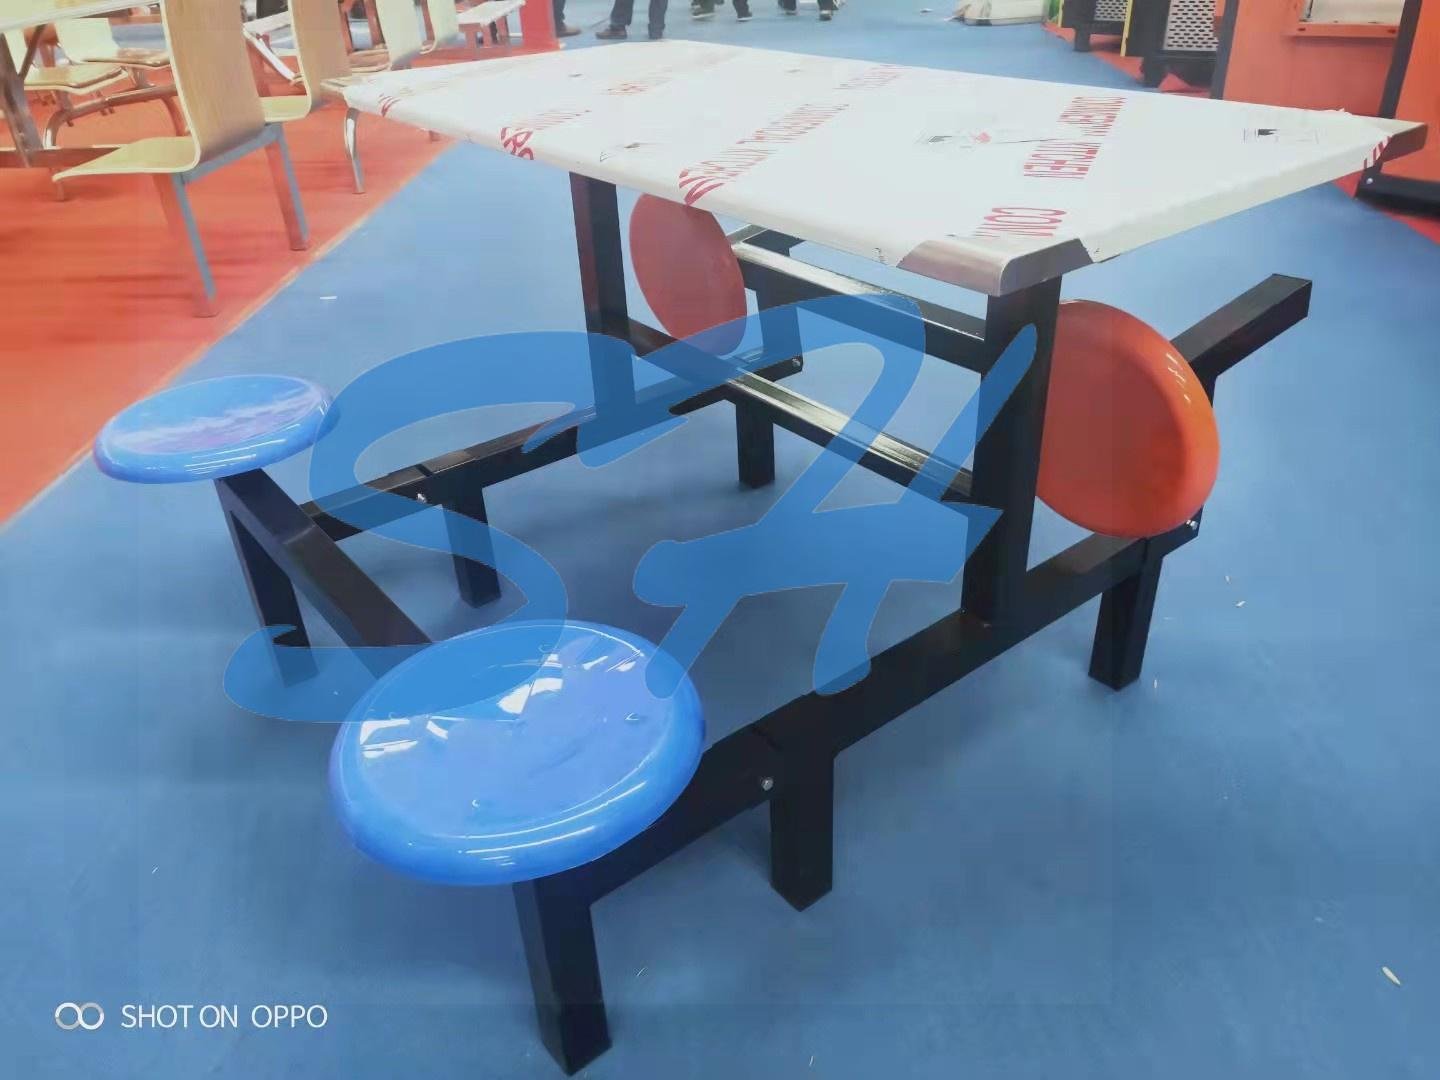  學校食堂快餐店不鏽鋼快餐桌椅 2